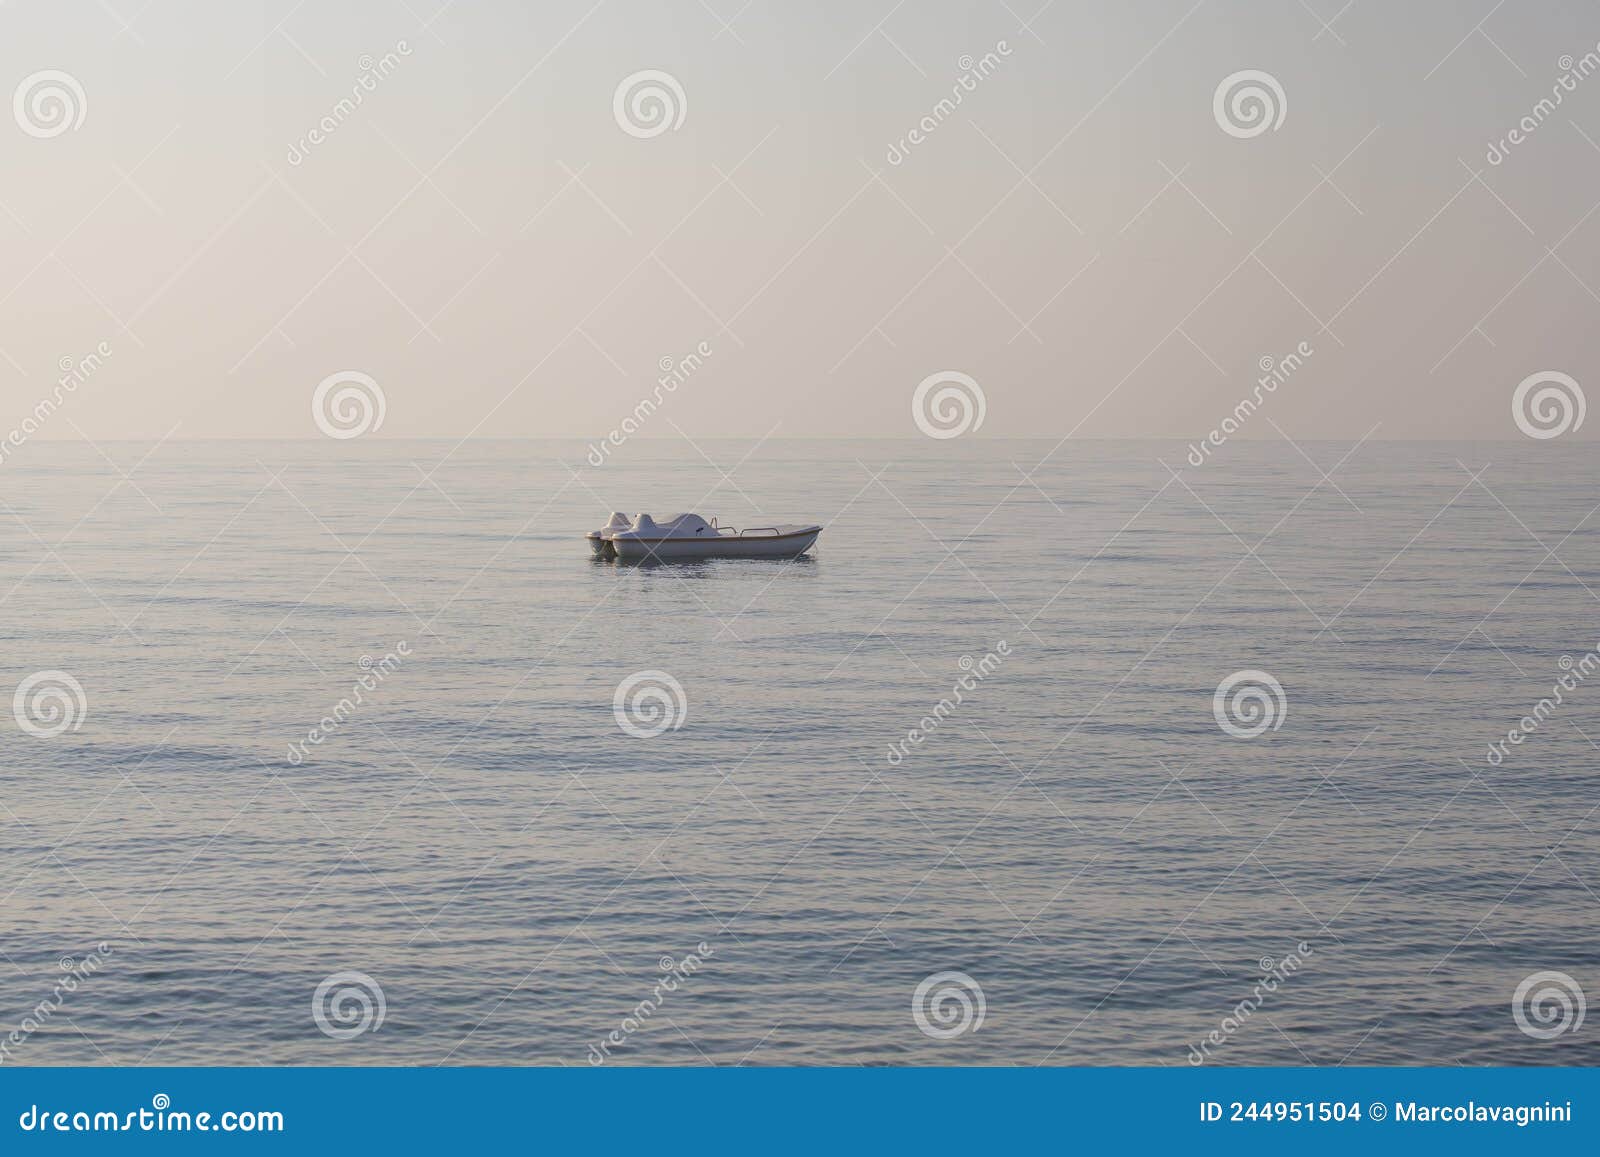 Sea empty pedalo Stock Photo by ©ilfede 28644735